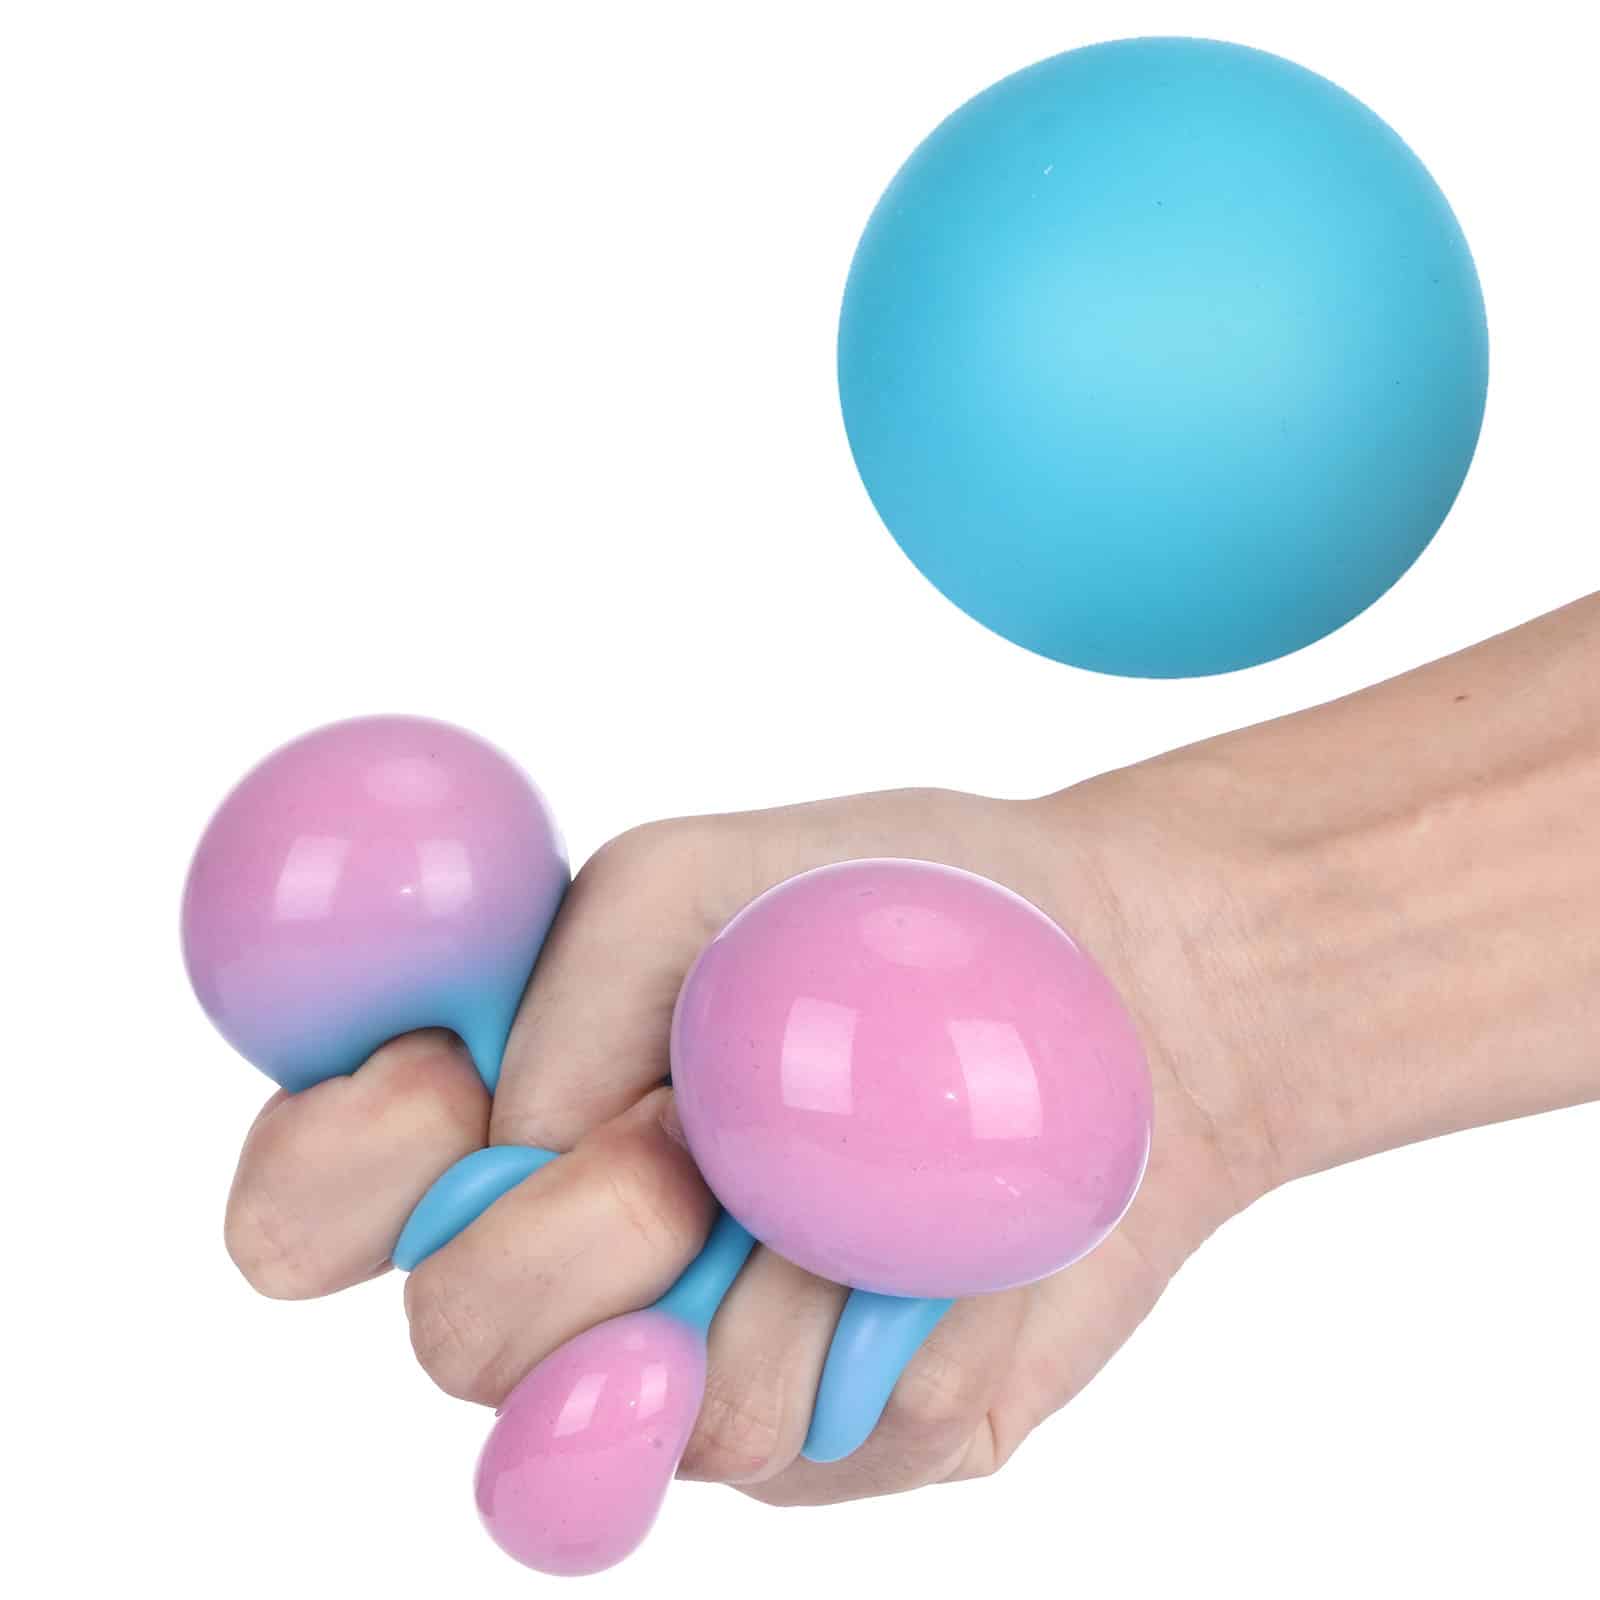 Une main presse une balle anti-stress qui change de couleur de bleu à rose quand pressée